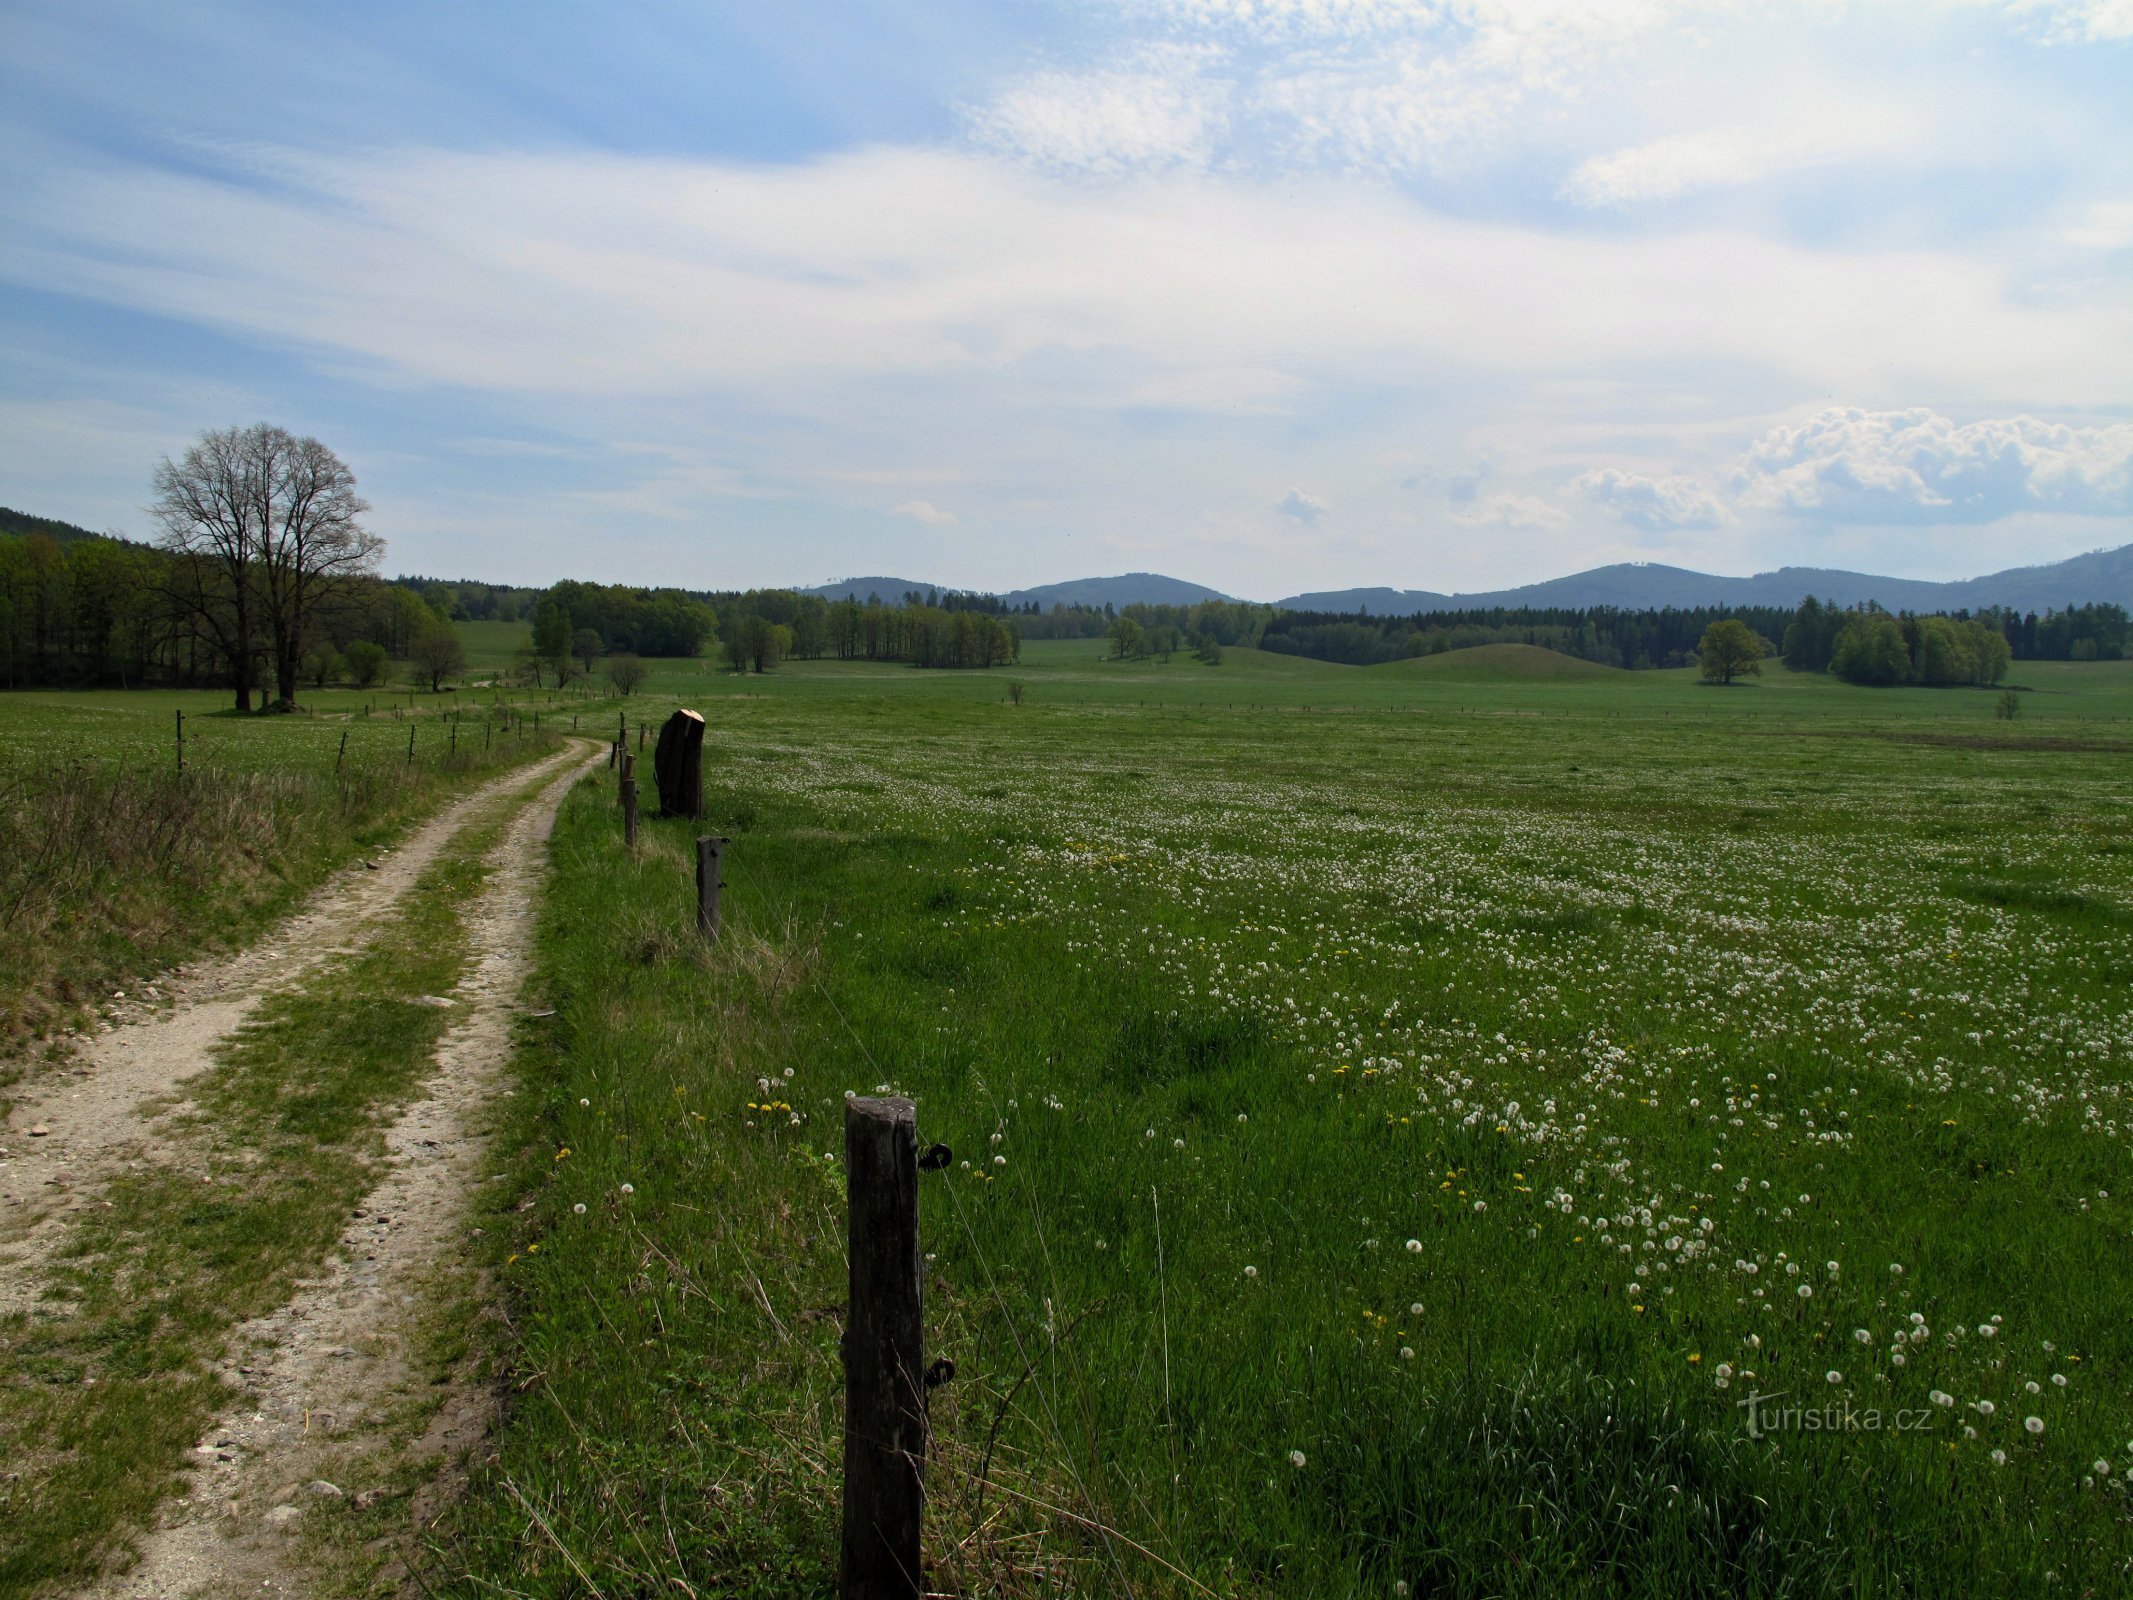 ジュロフスコ: Kobyla nad Vidnávka の背後にある野原の小道